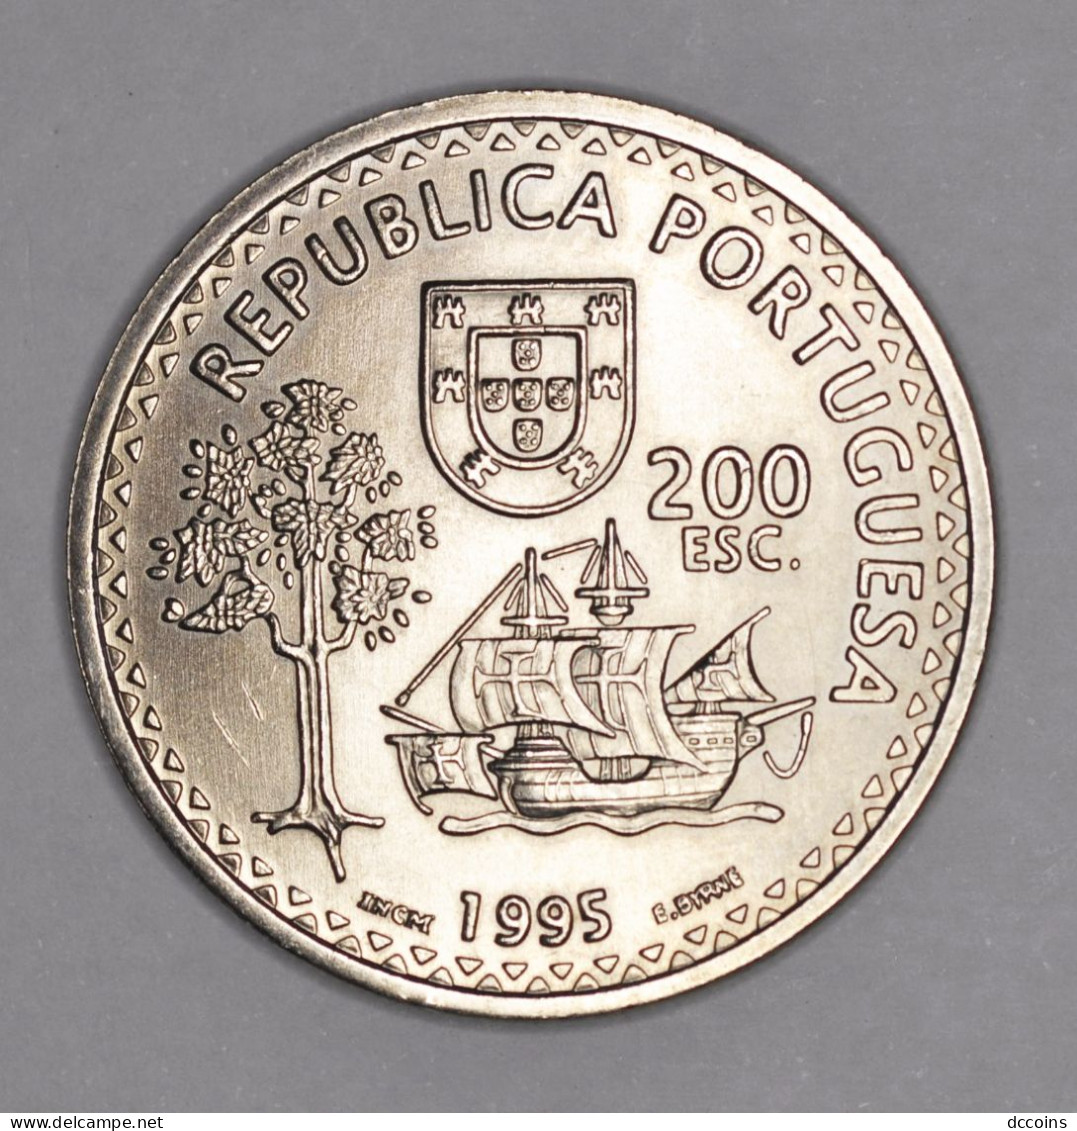 Descobrimentos Portugueses  6ª Serie 200  Esc. Ilhas De Solor E Timor Year 1995 - Portugal